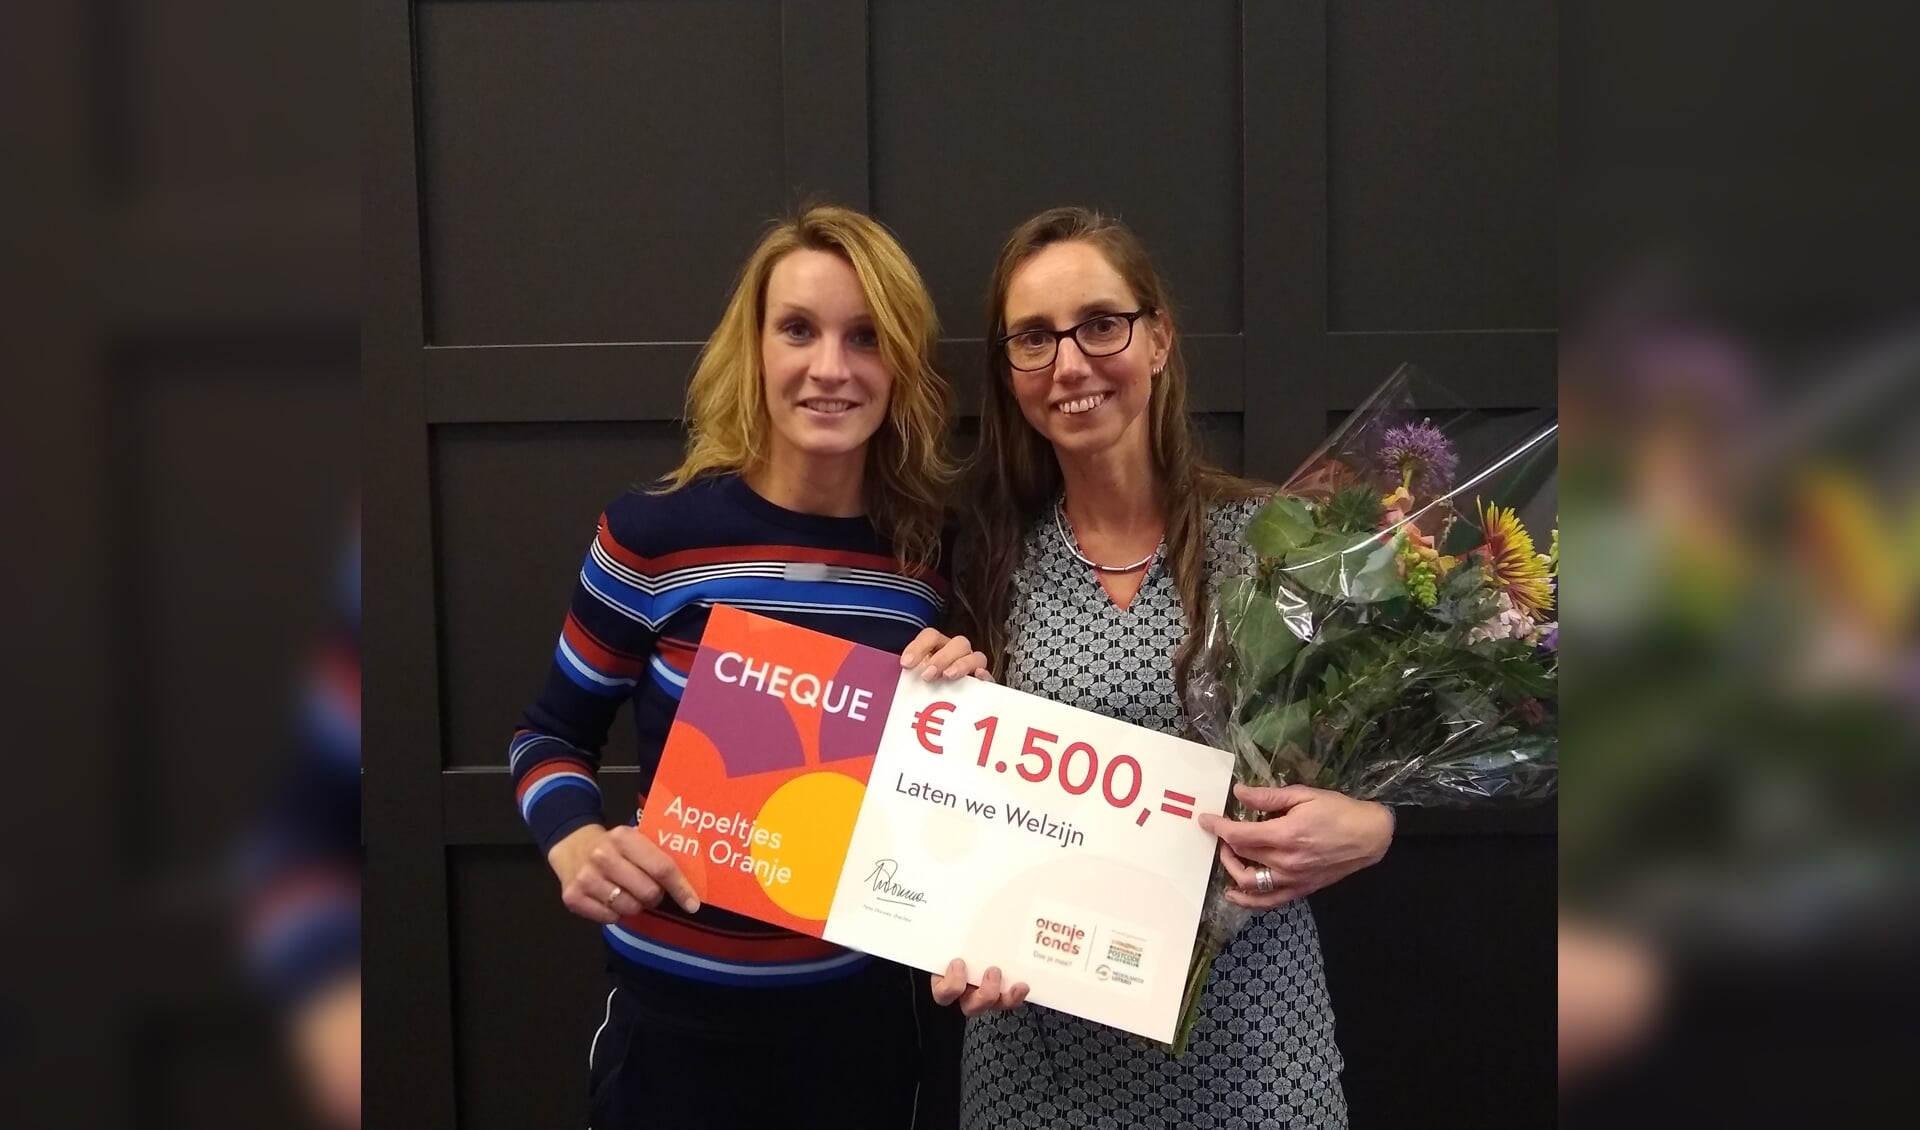 Mentorproject Laten we Welzijn uit Ede is genomineerd voor de Appeltjes van Oranje.